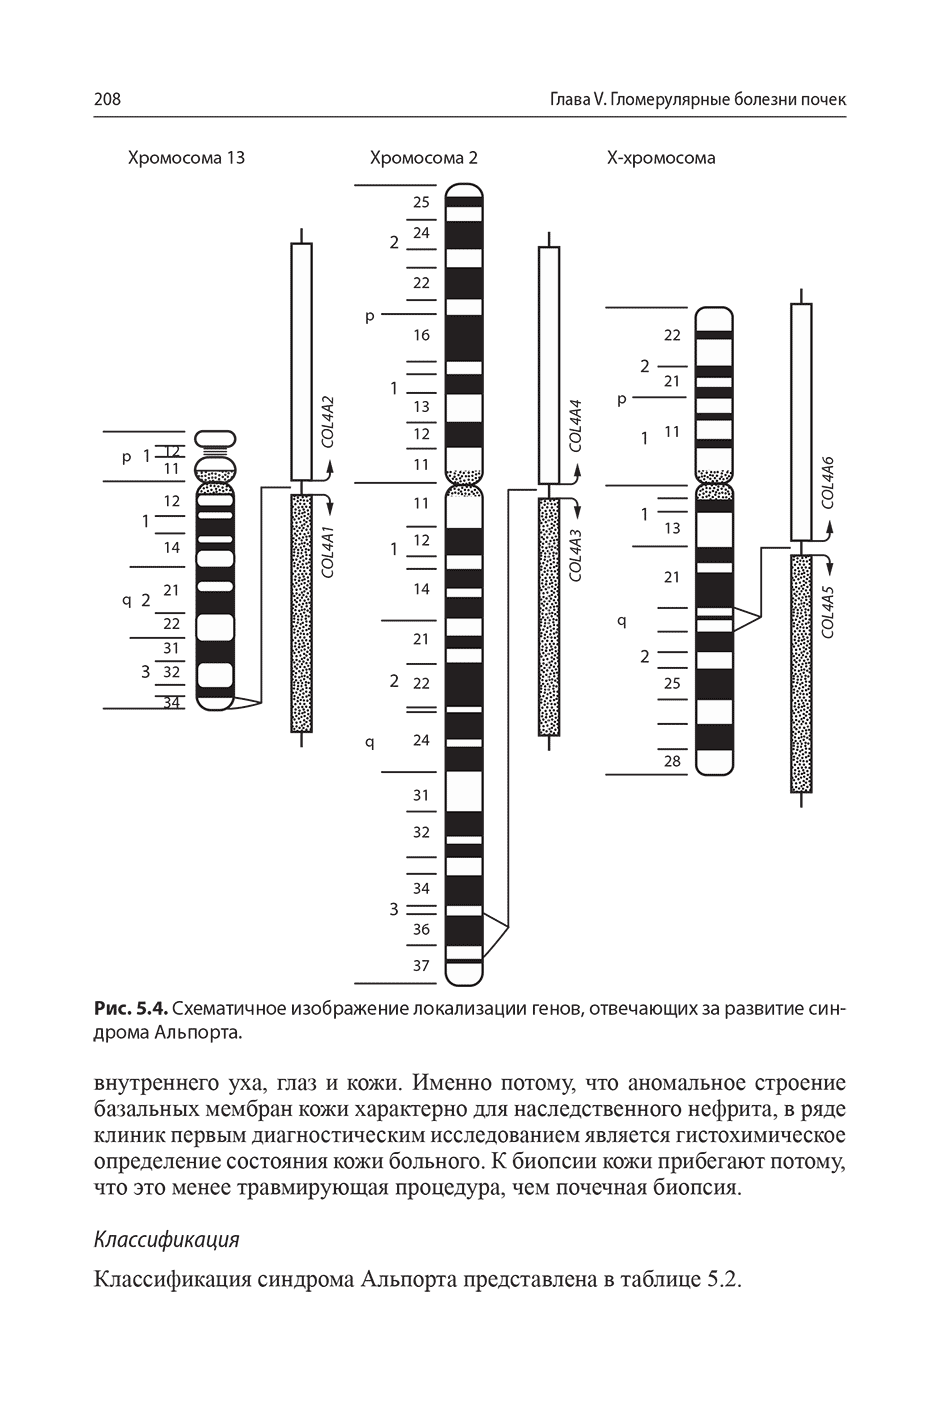 Рис. 5.4. Схематичное изображение локализации генов, отвечающих за развитие